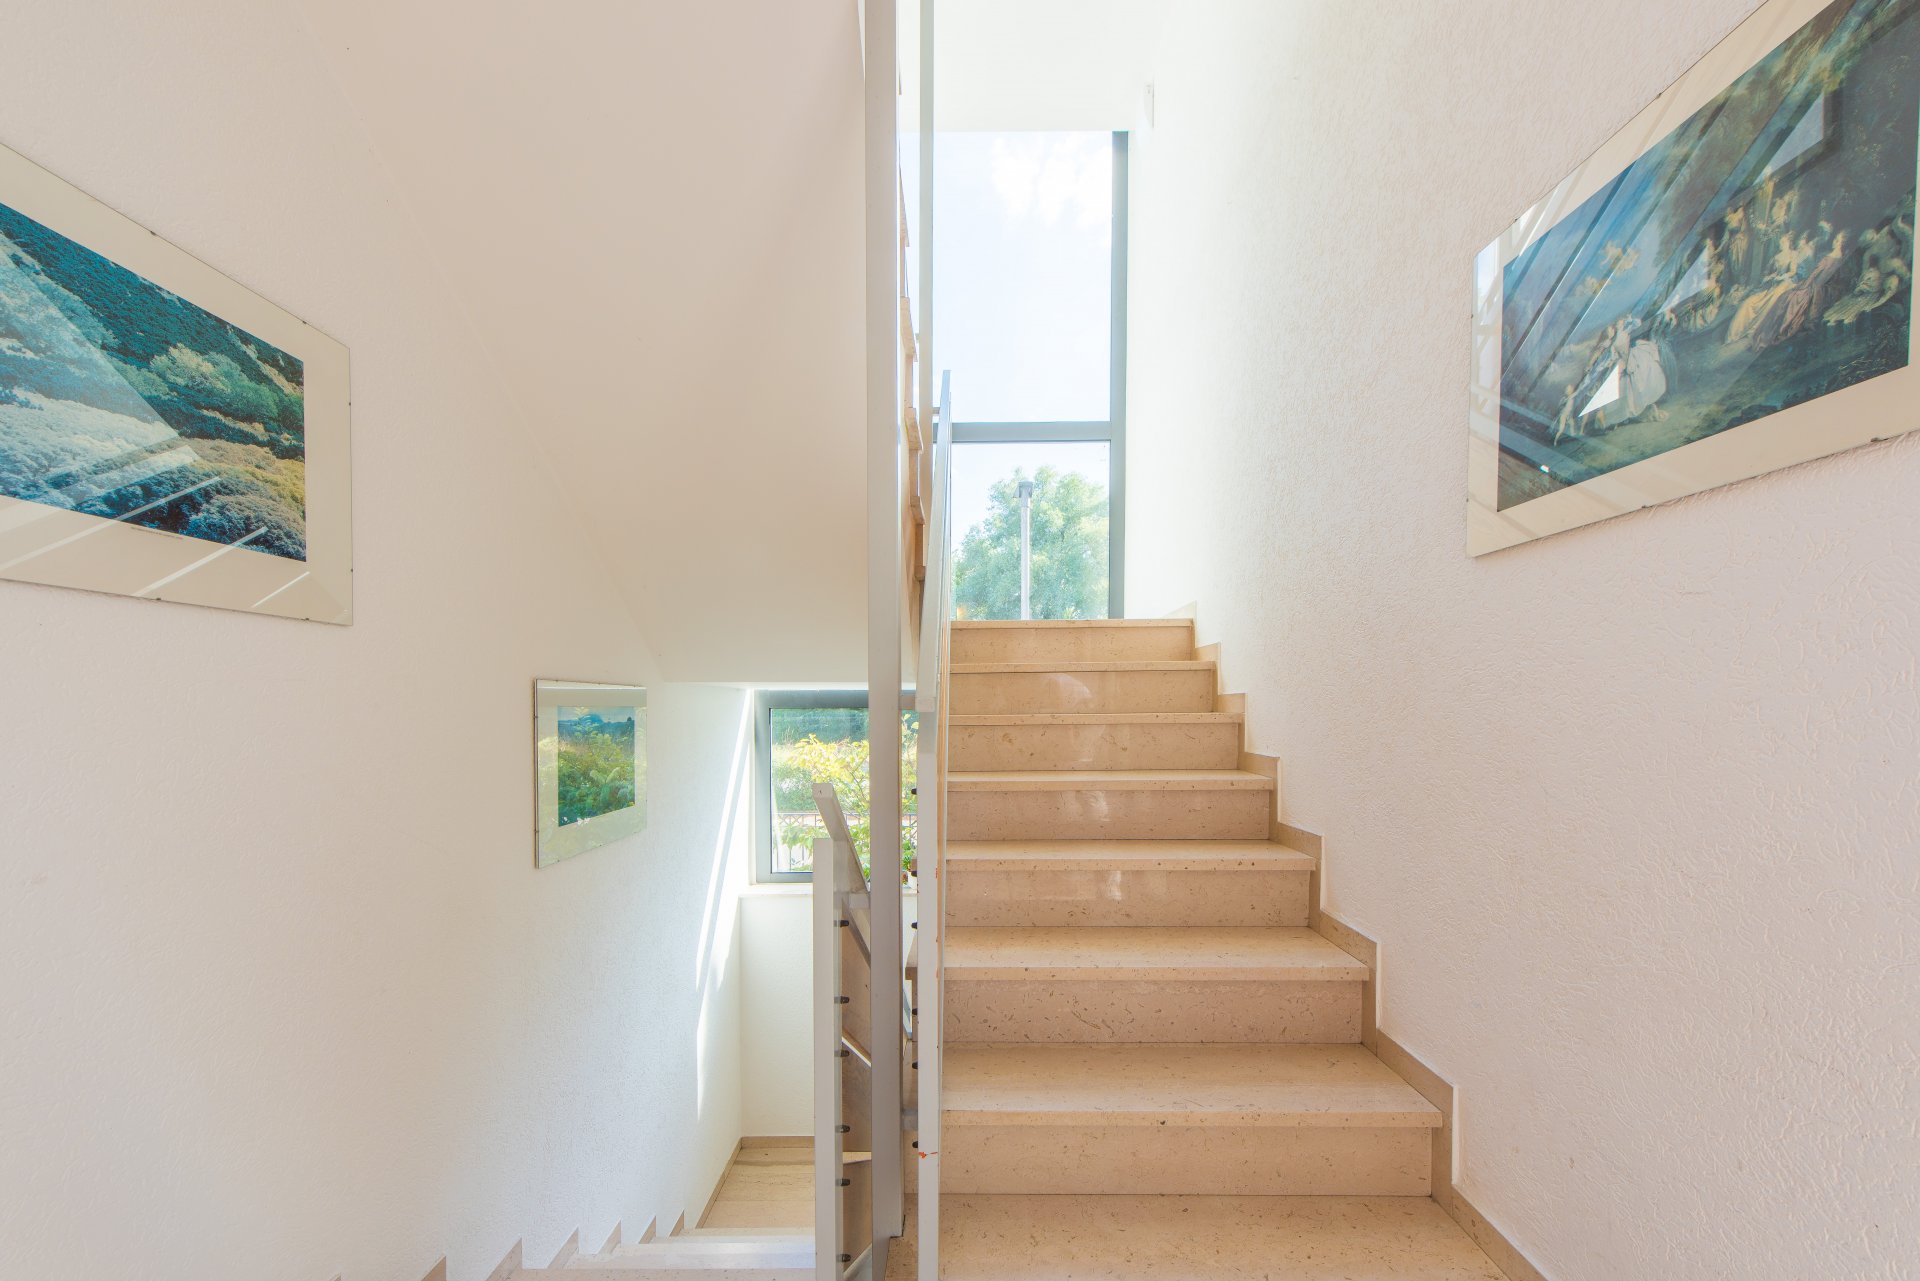 Sehr gepflegtes Treppenhaus zu den beiden anderen vermieteten Wohnungen - Oliver Reifferscheid - Immobilienmakler Darmstadt